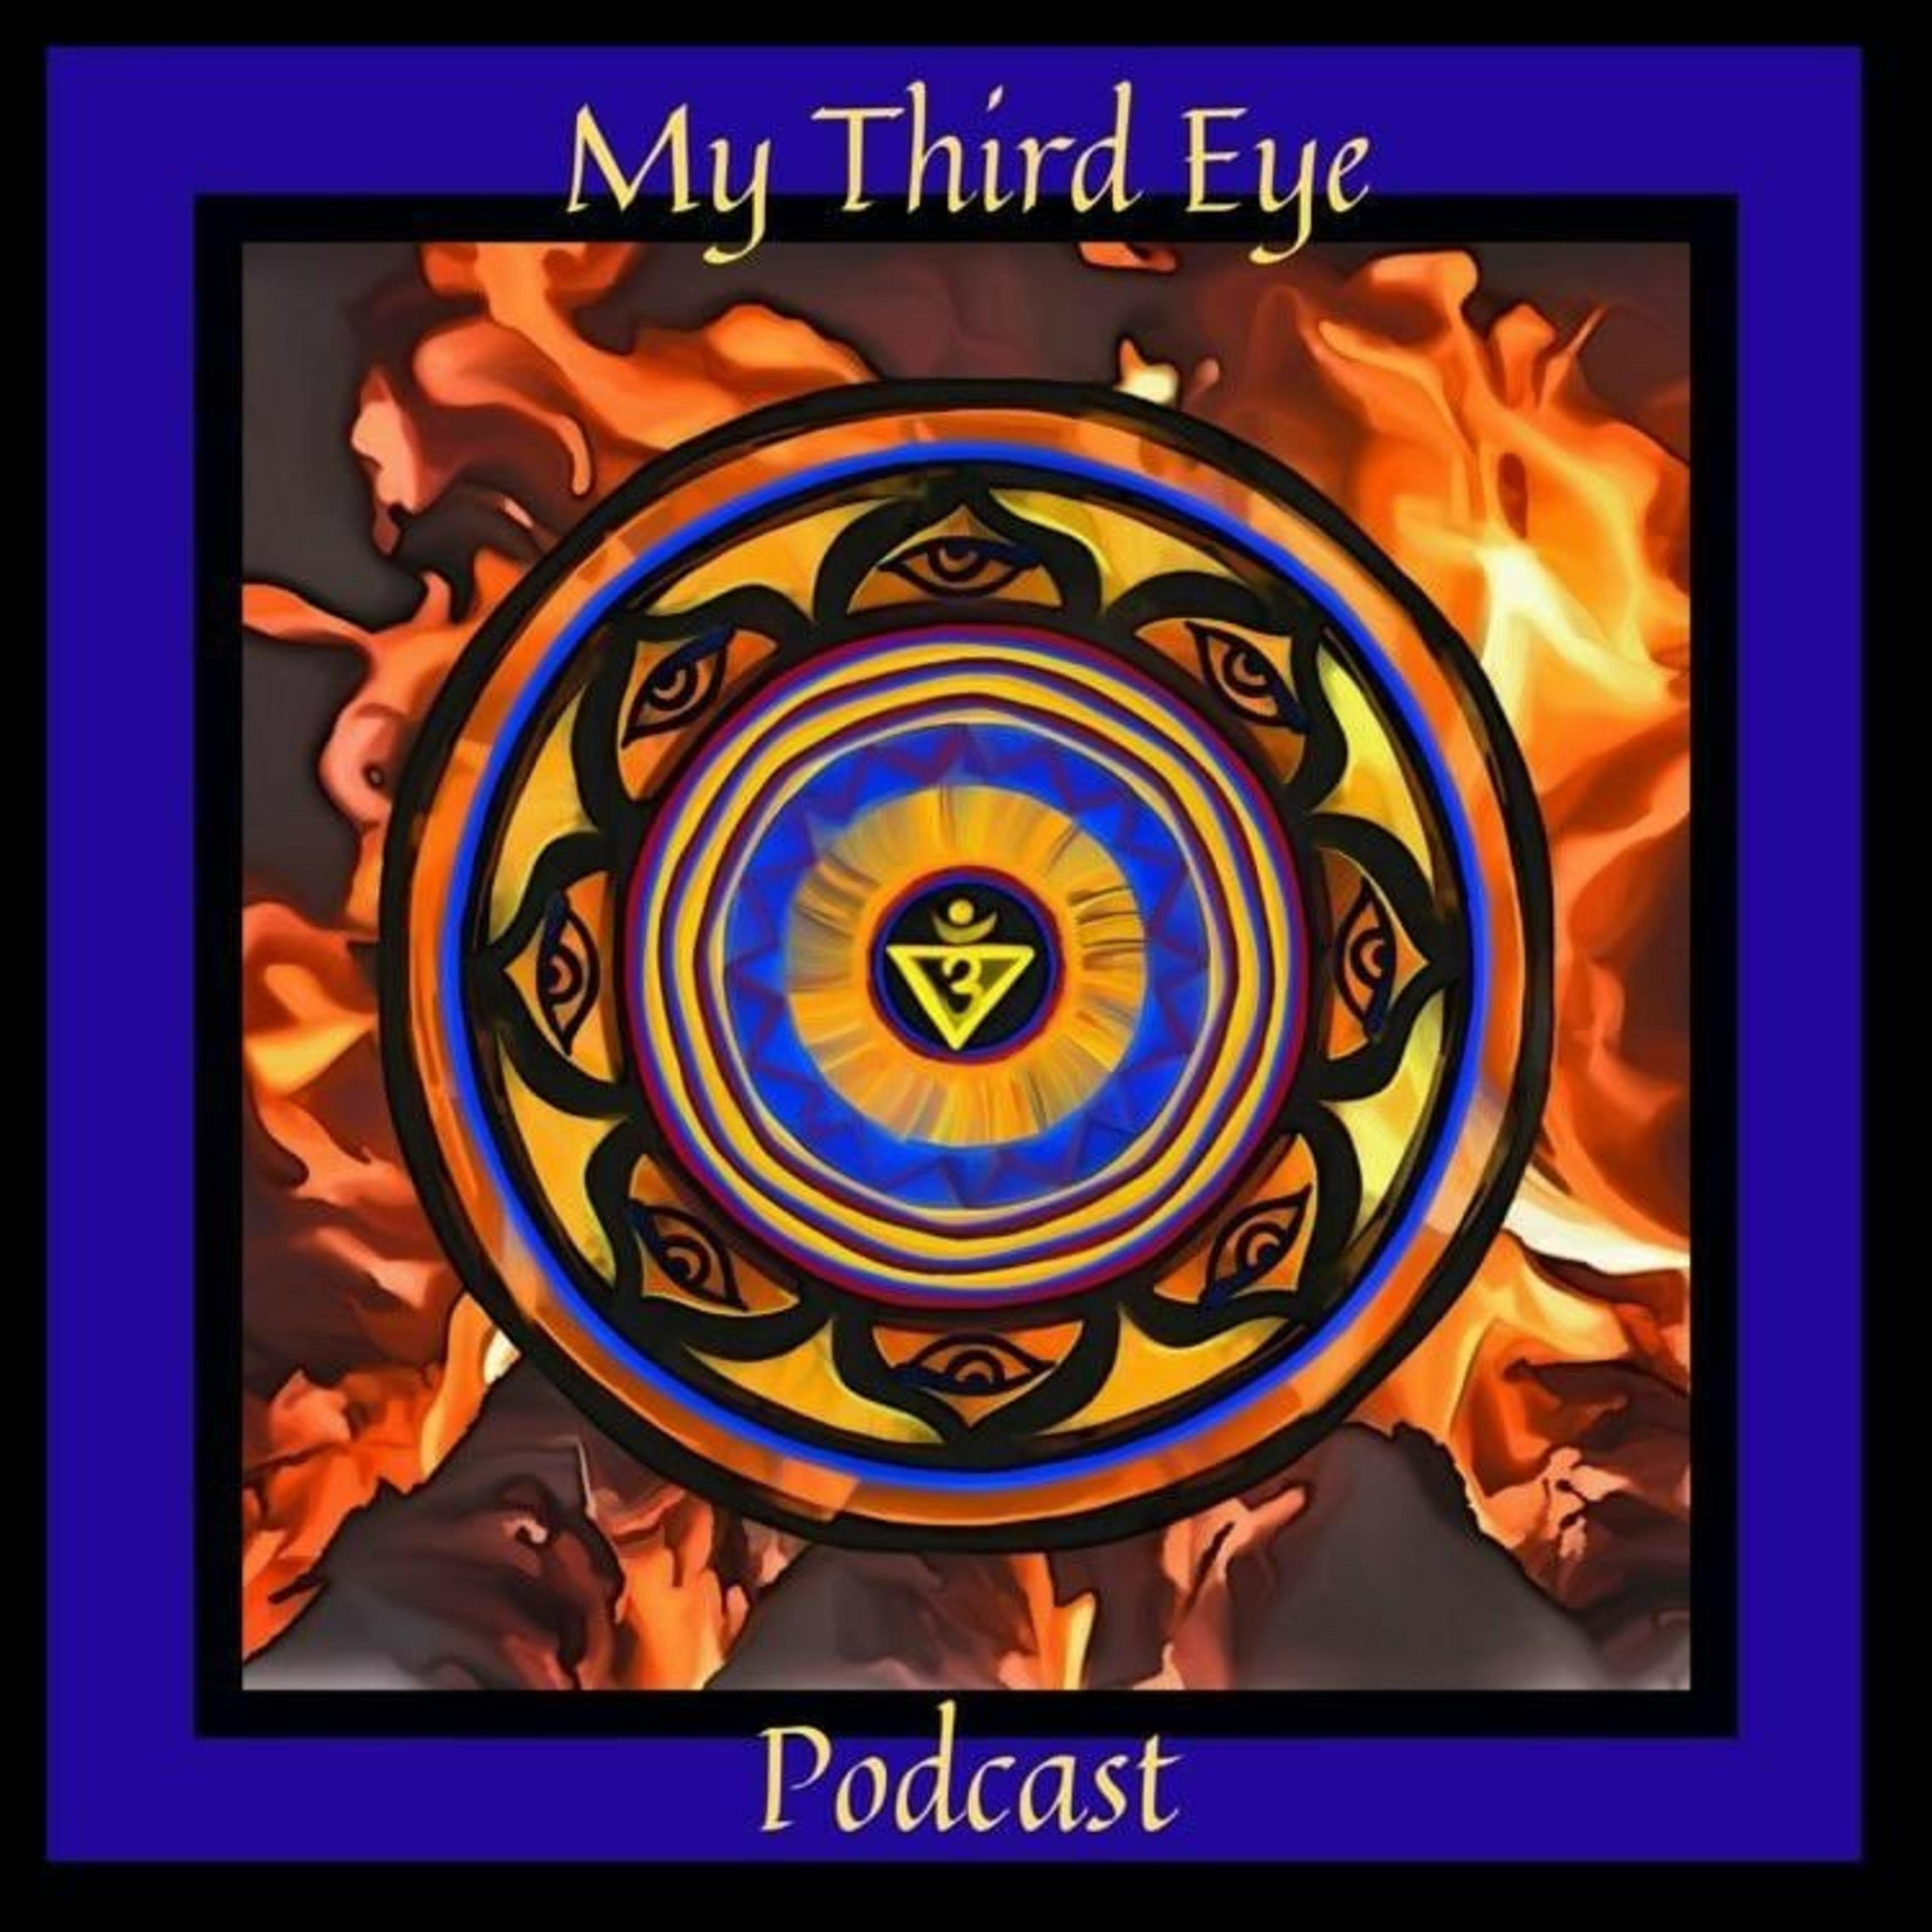 My Third Eye Podcast